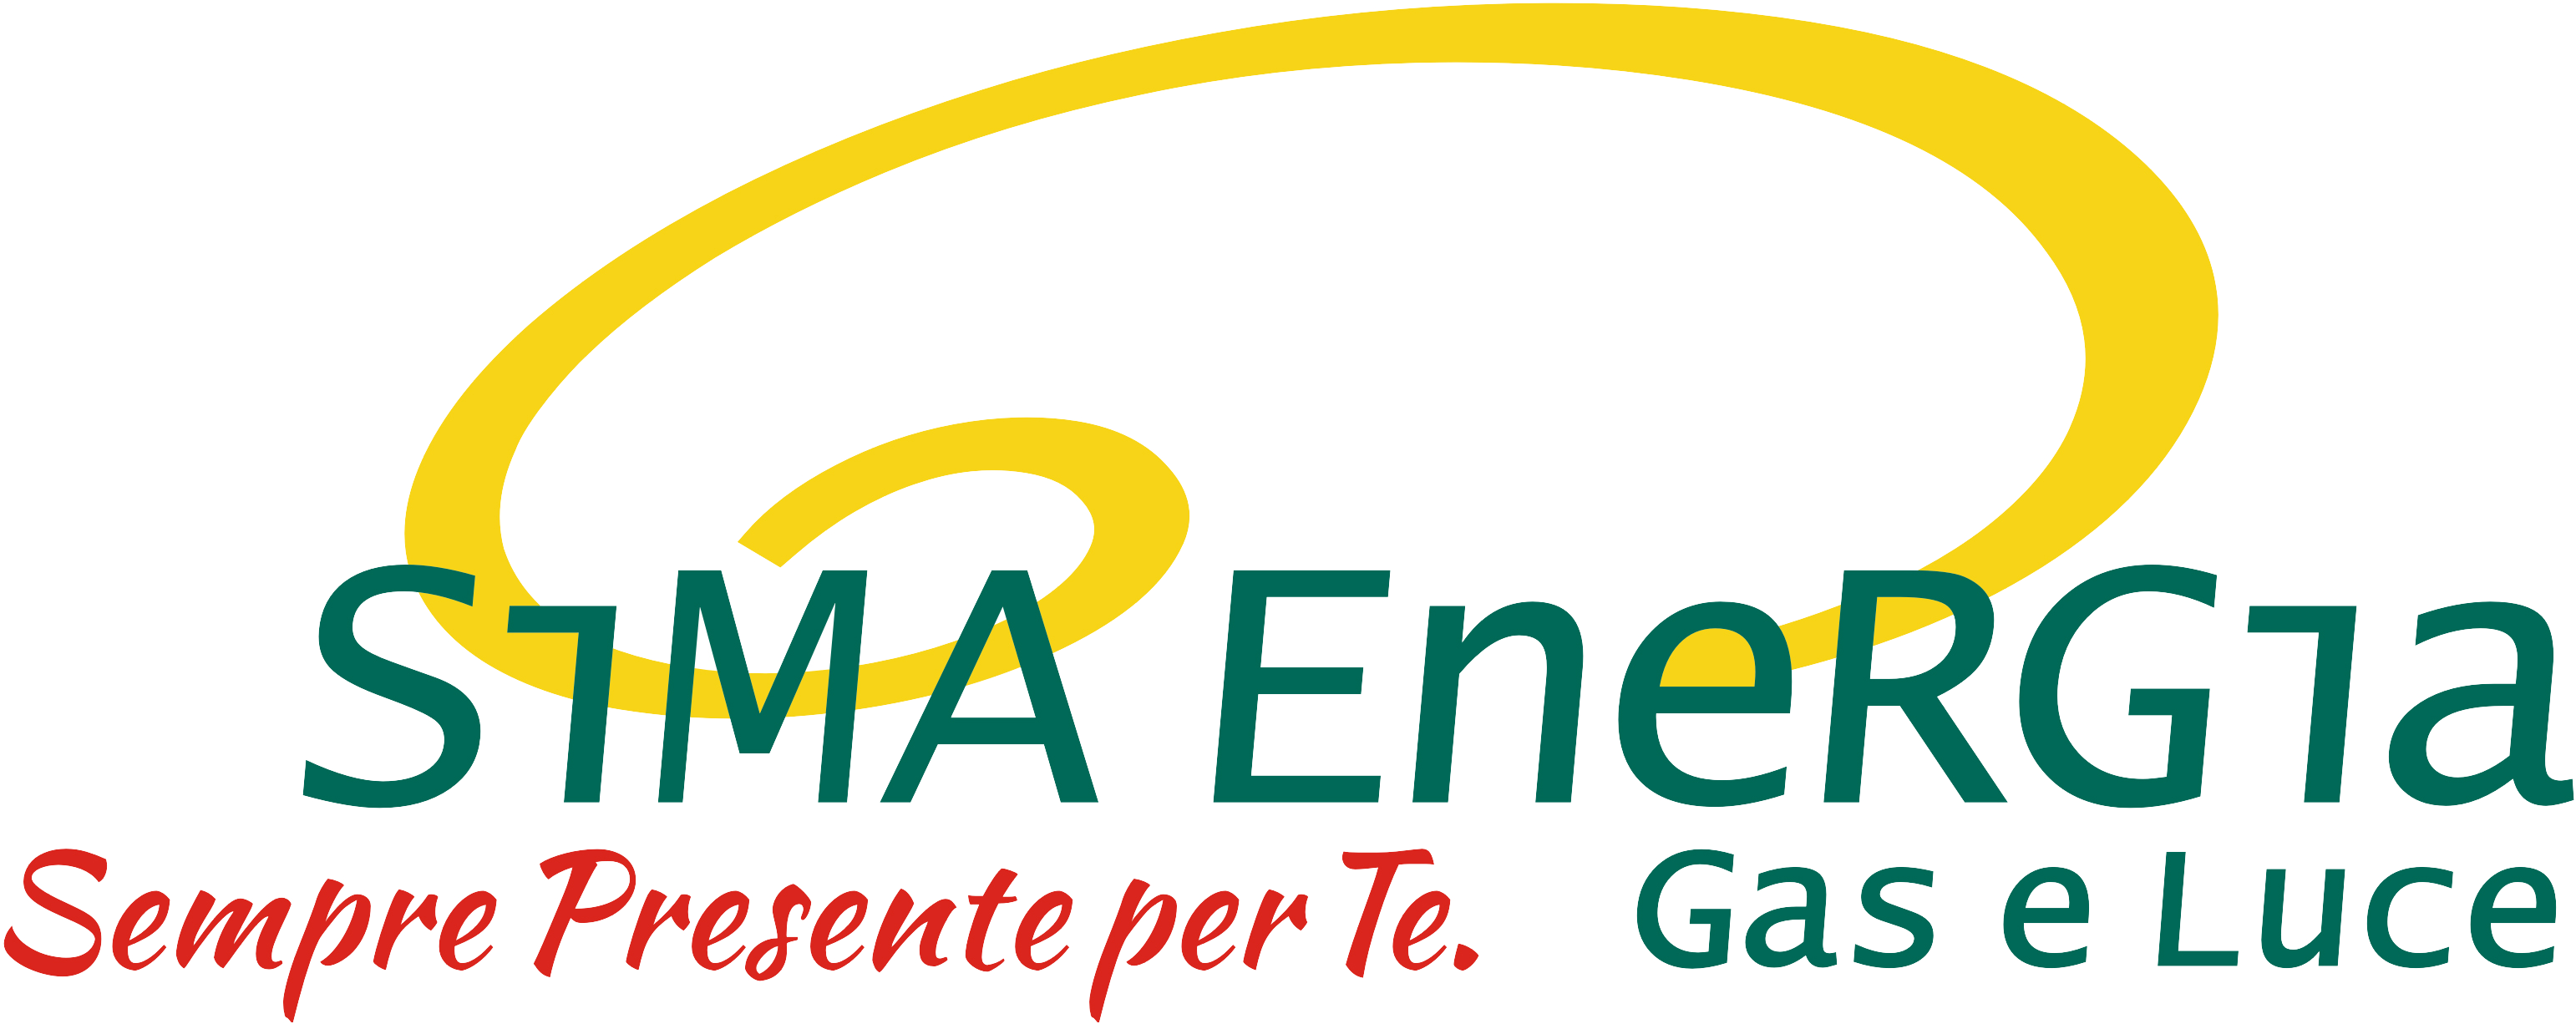 SiMA Energia S.p.A.